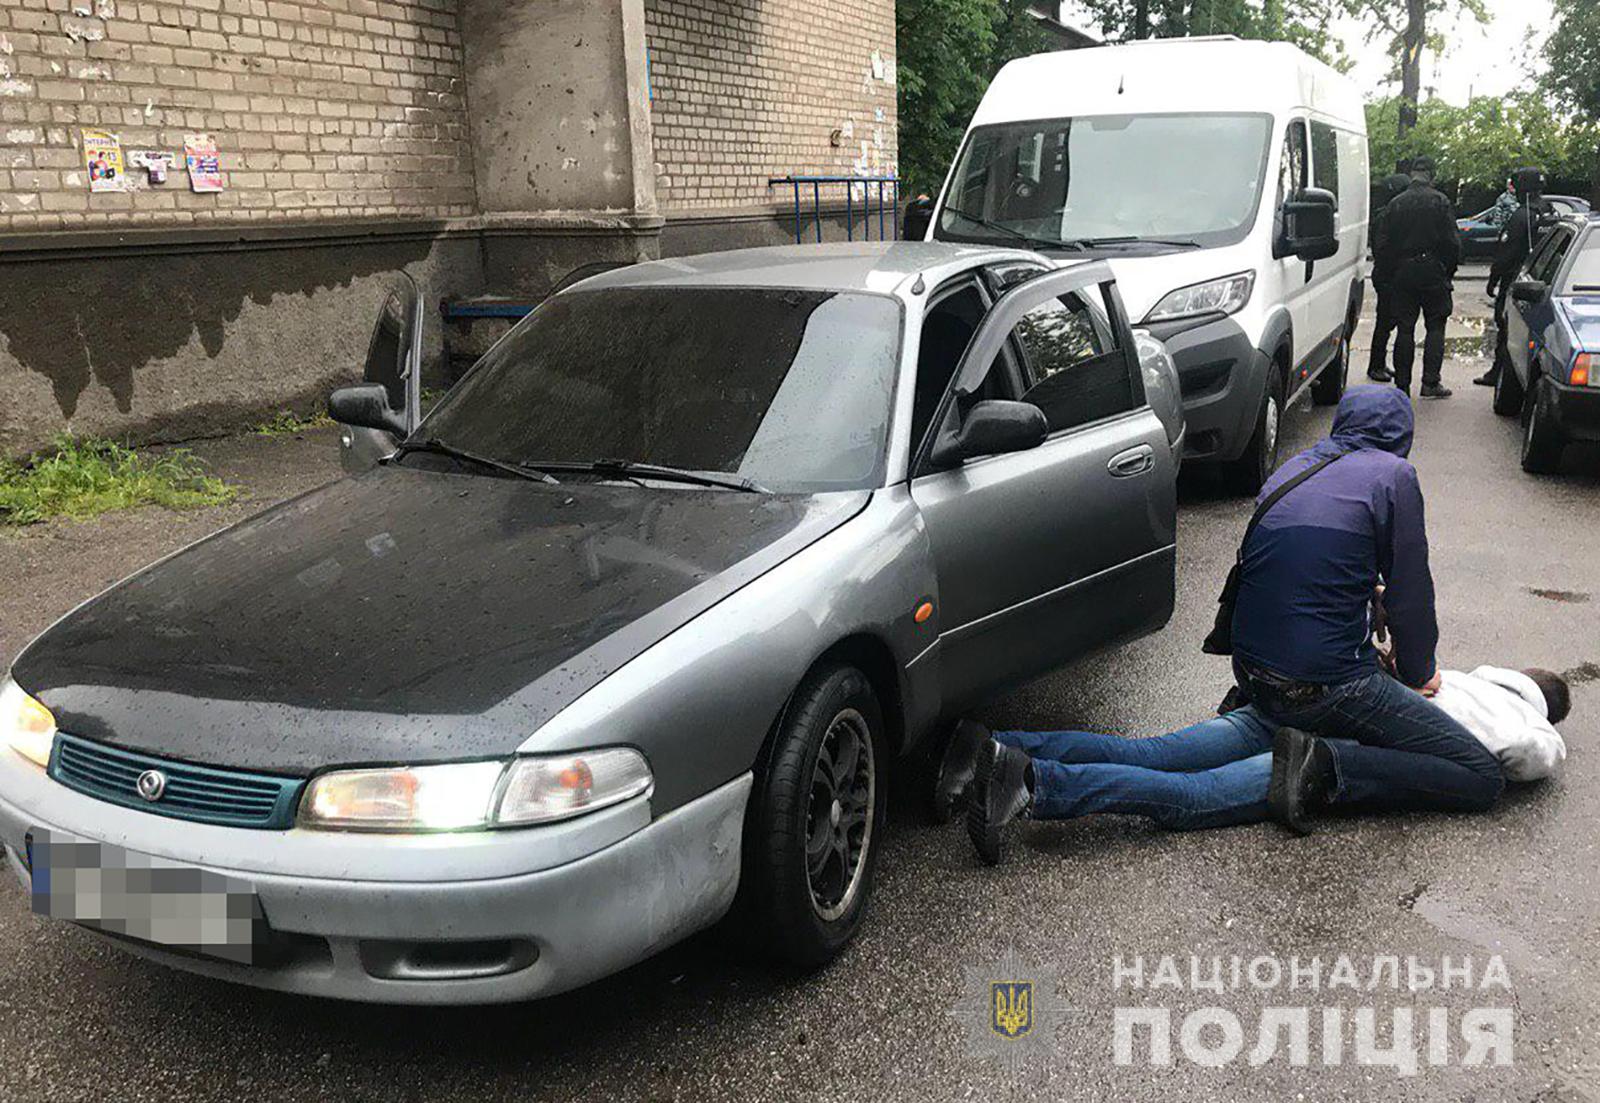 Наркоторговец на иномарке в Запорожье намеренно врезался в полицейское авто во время преследования (ФОТО)